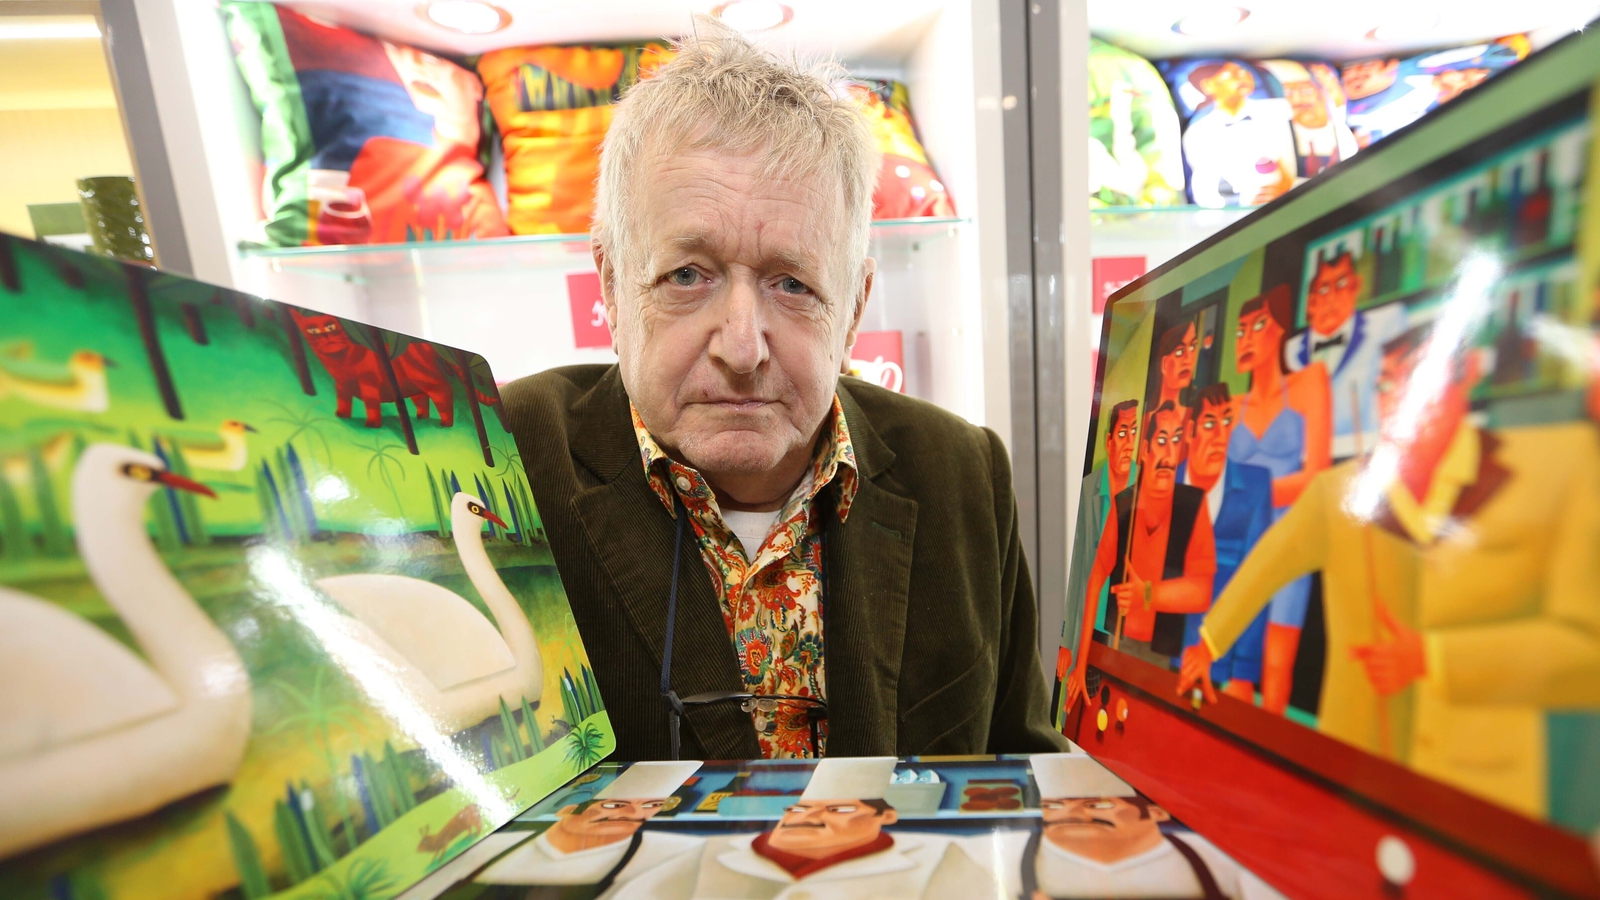 Irish artist Graham Knuttel dies aged 69